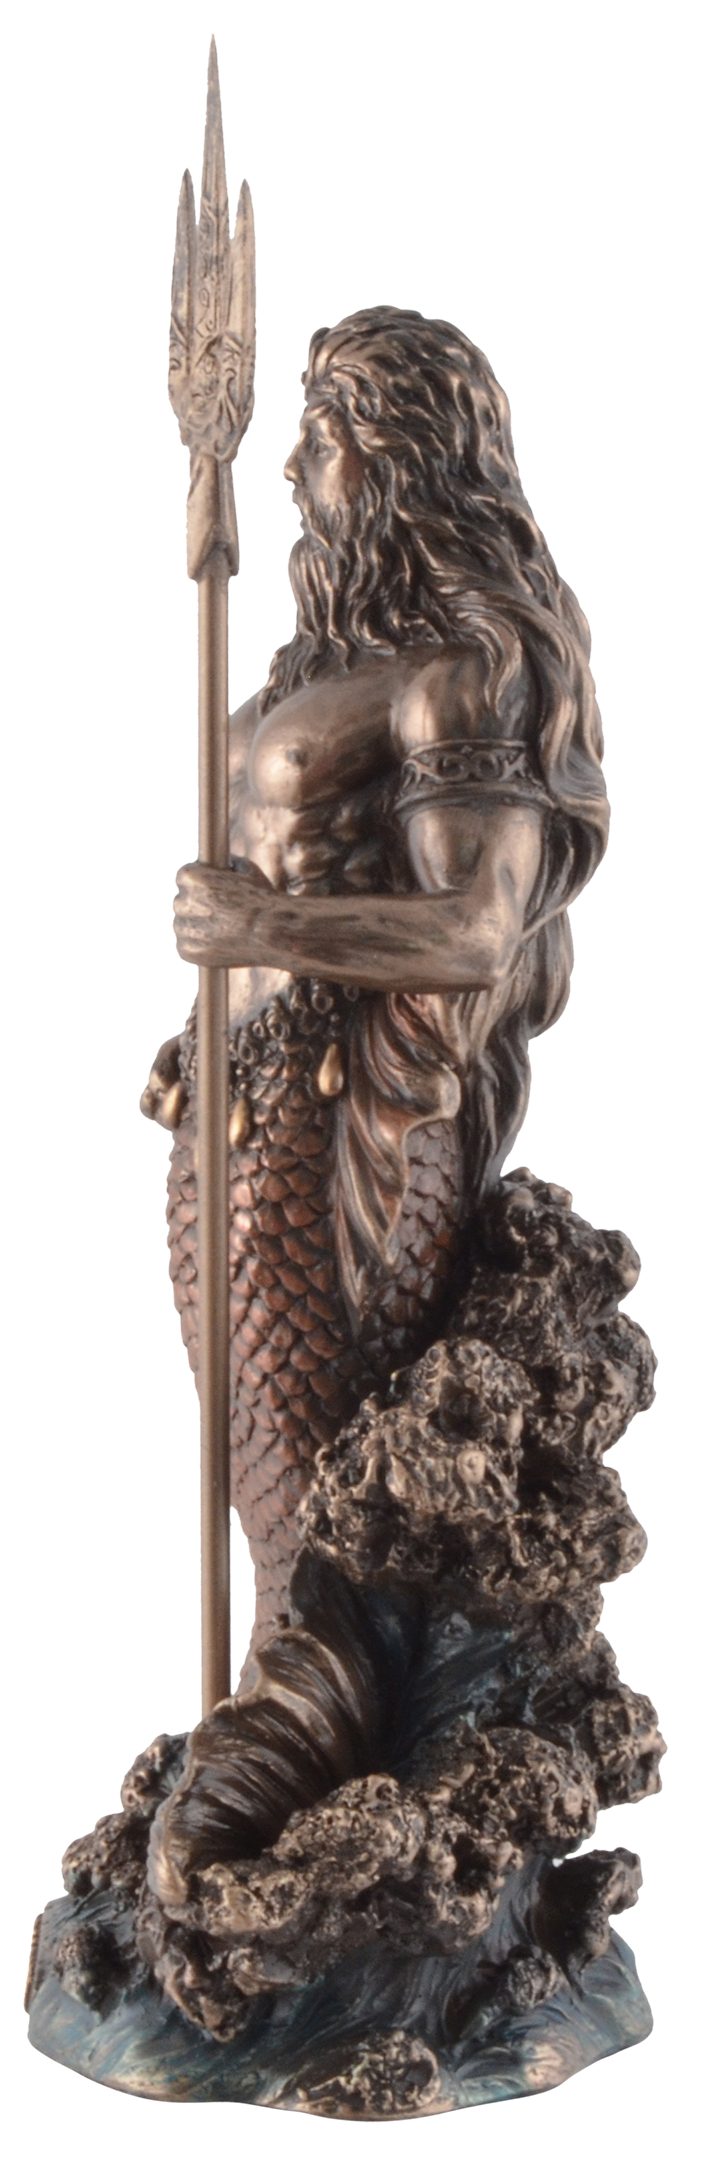 Vogler direct Gmbh Dekofigur Griechischer Veronesedesign, 8x7x18cm L/B/H ca. Poseidon, Gott Größe: bronziert/coloriert